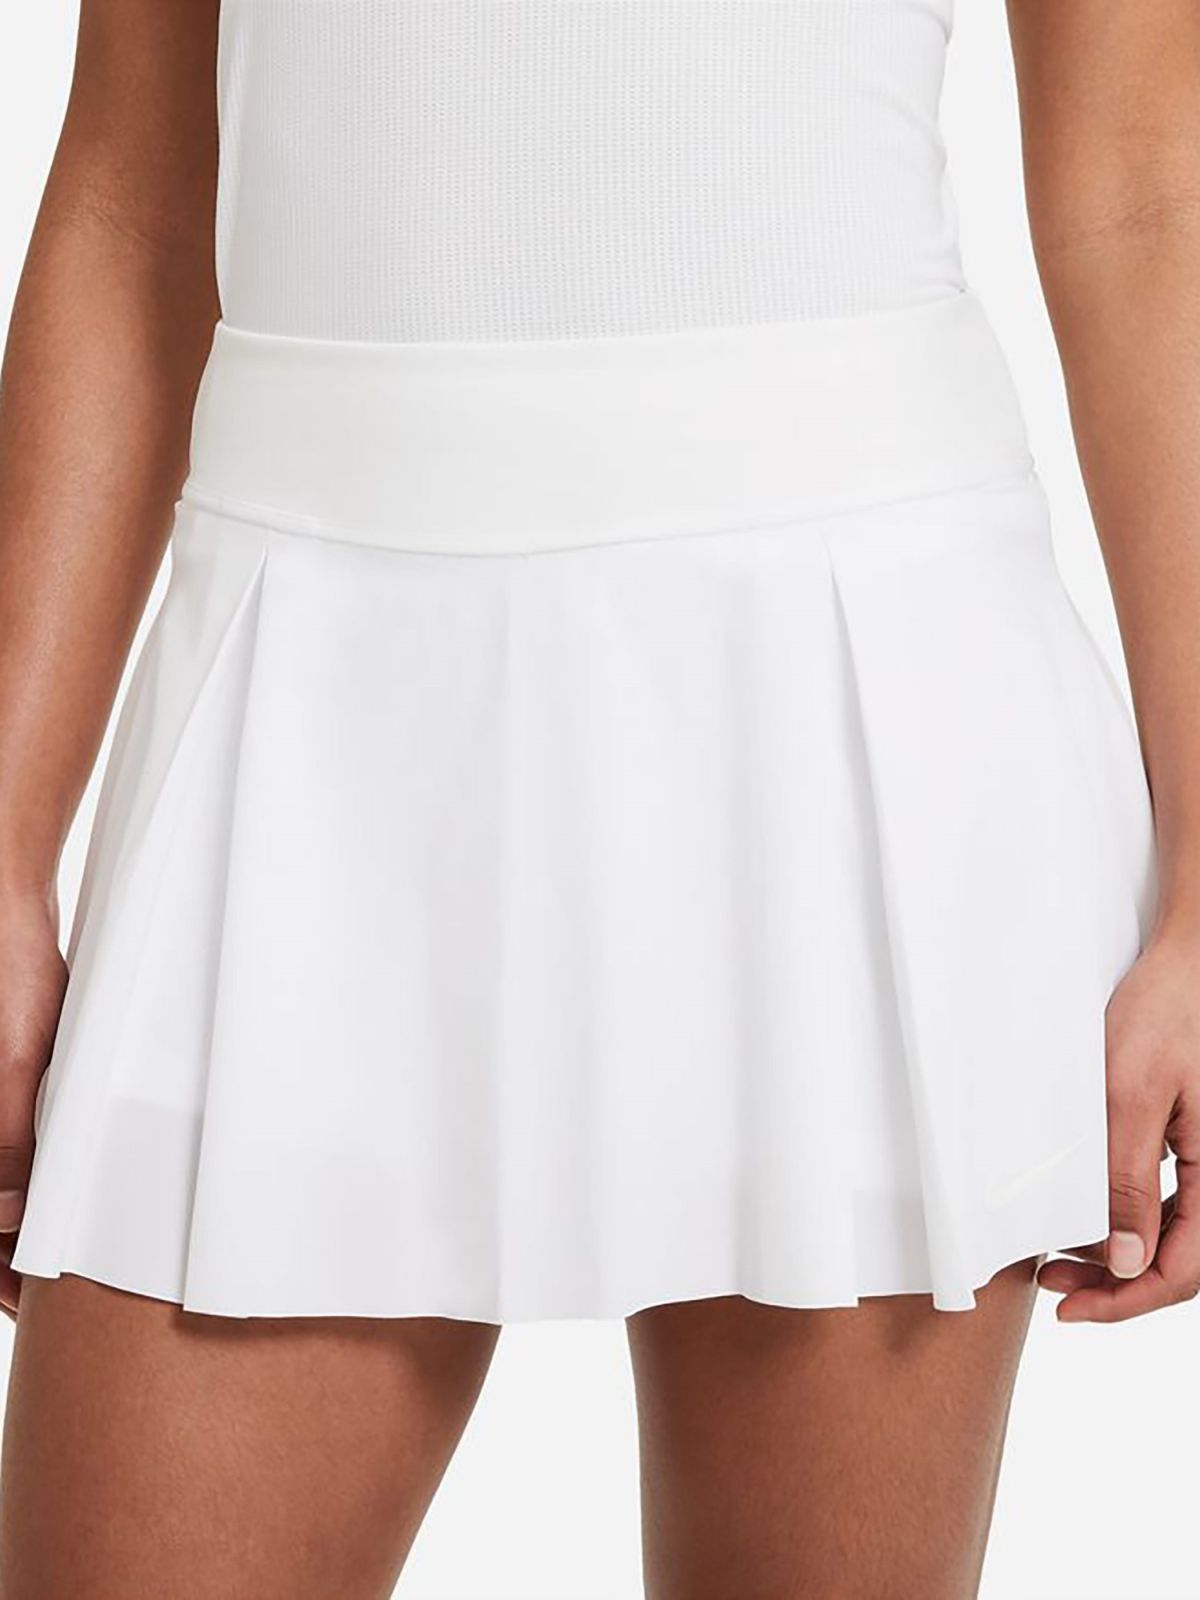  חצאית טניס בסגנון מיני / נשים של NIKE